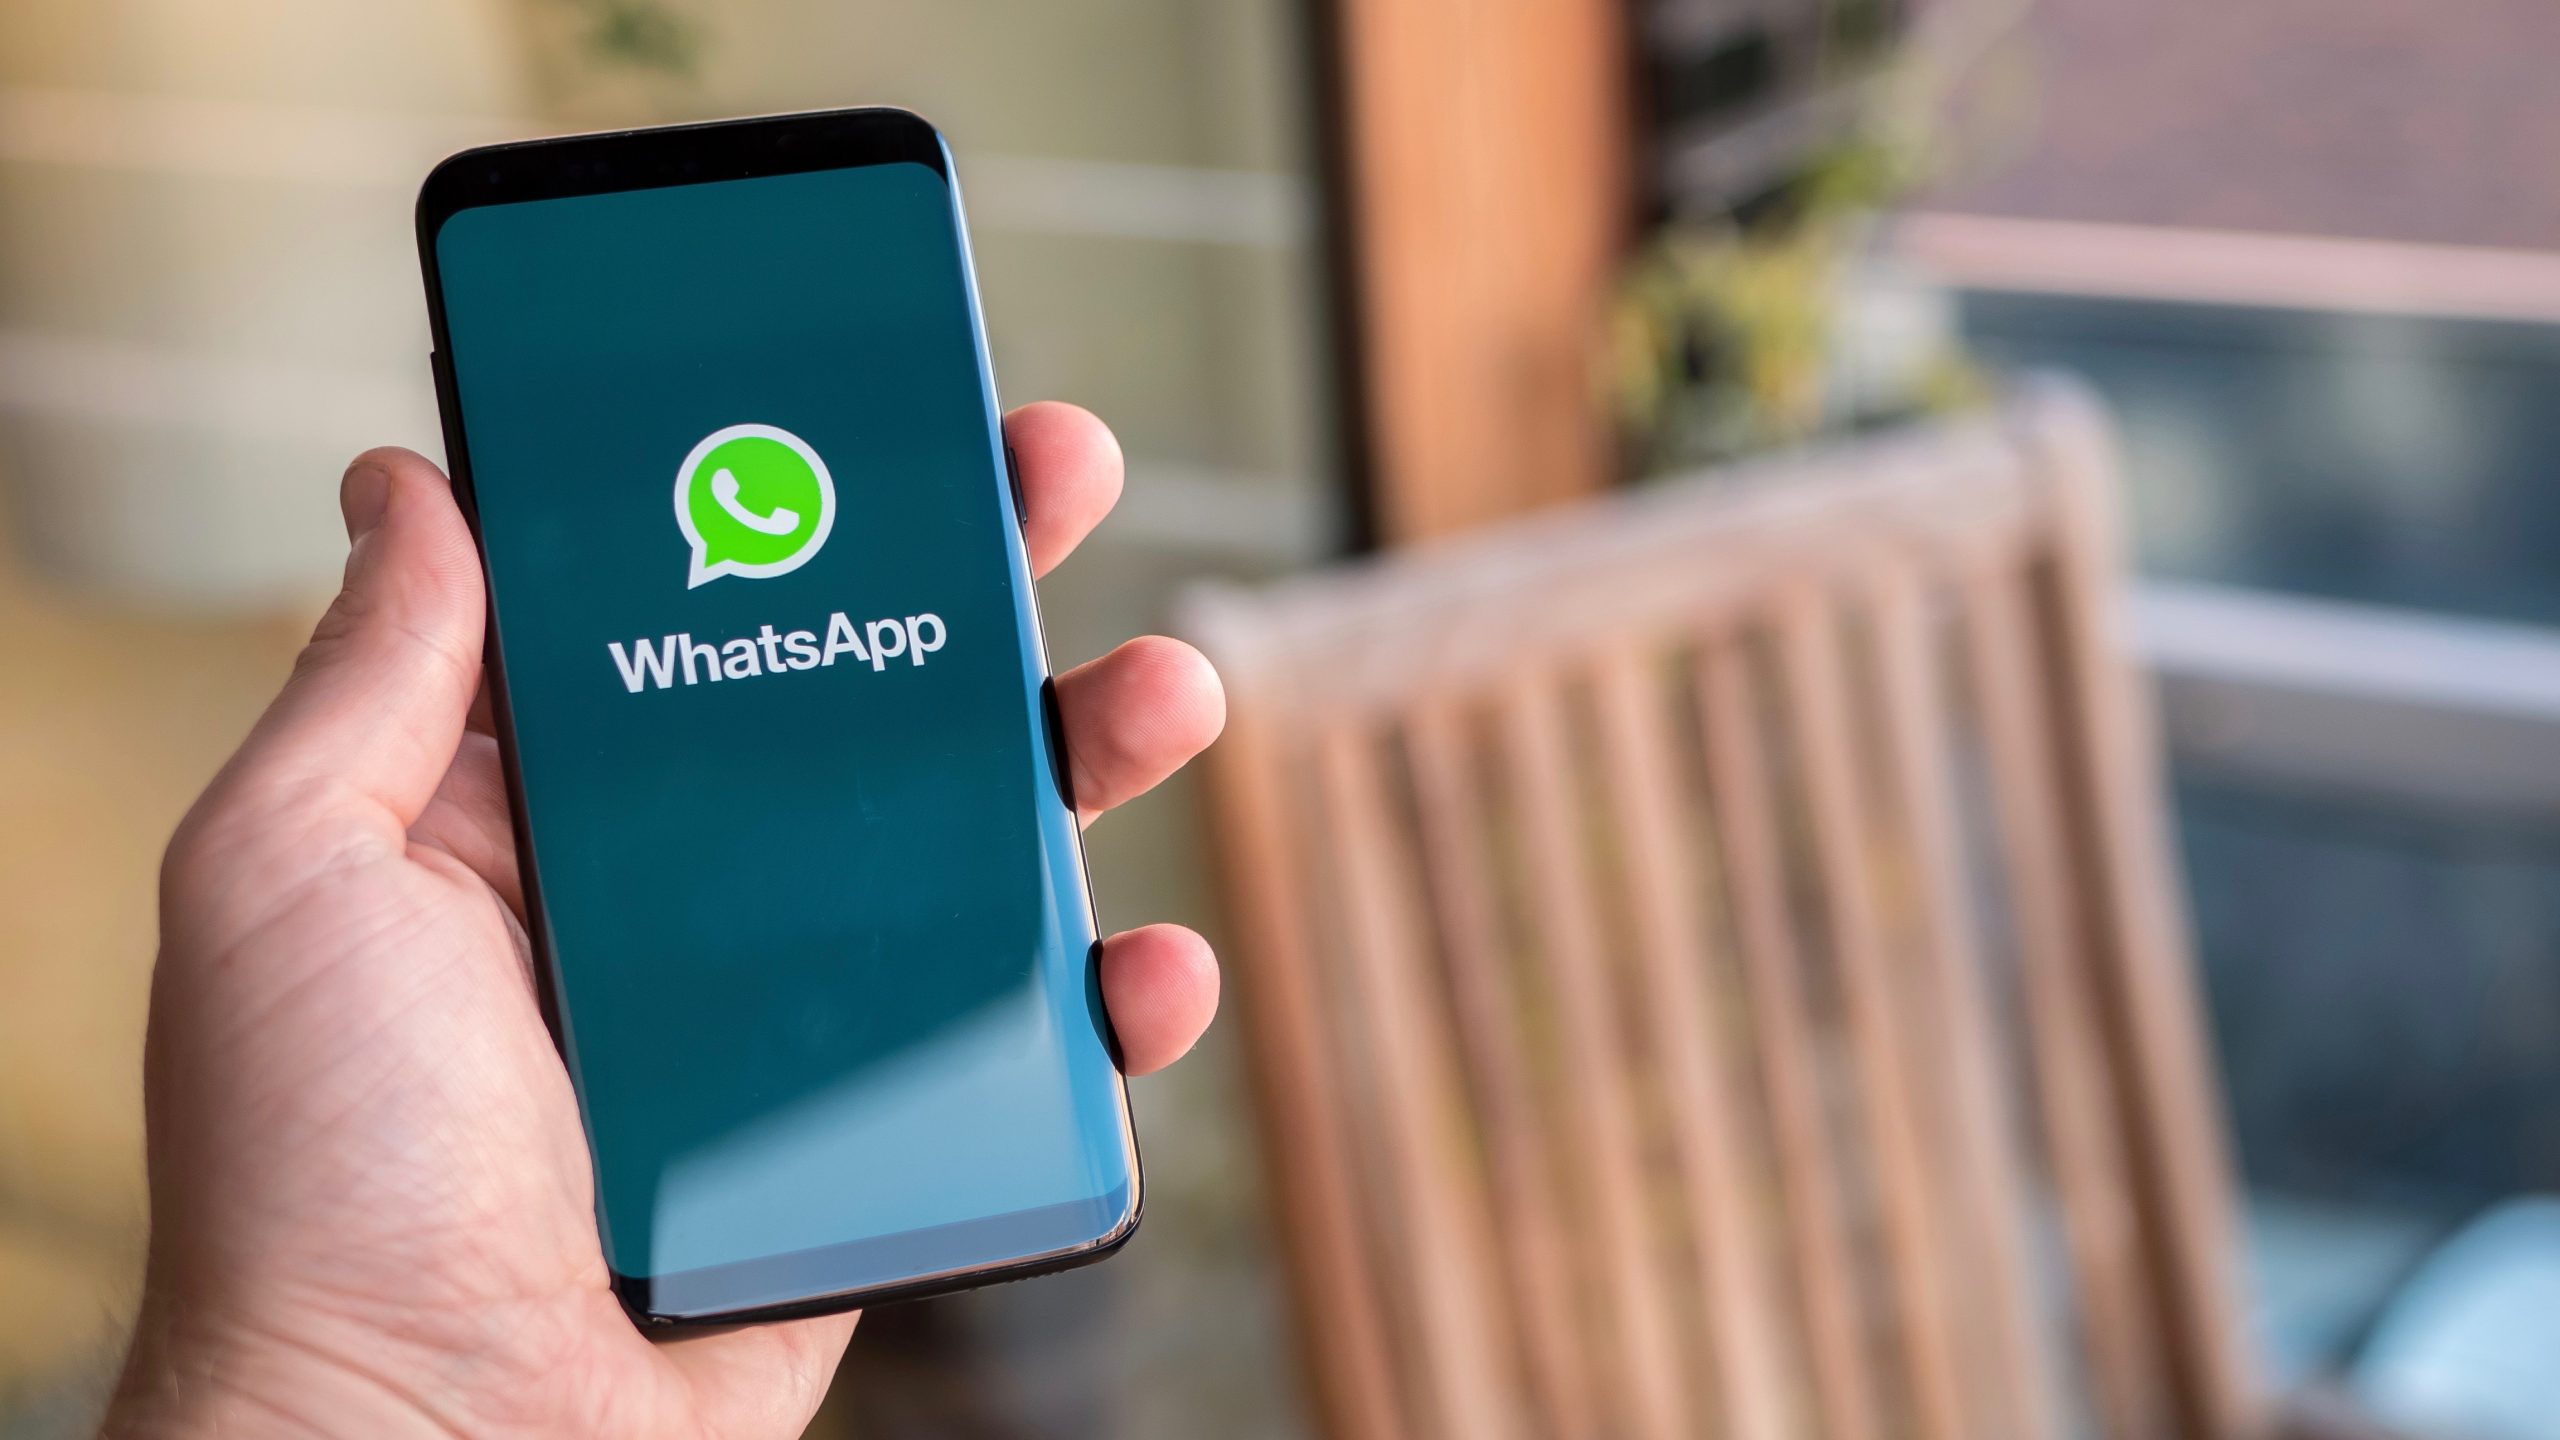 Korisnici Whatsappa koji koriste starije modele iPhonea i Androida neće moći koristiti popularnu aplikaciju za razmjenu poruka